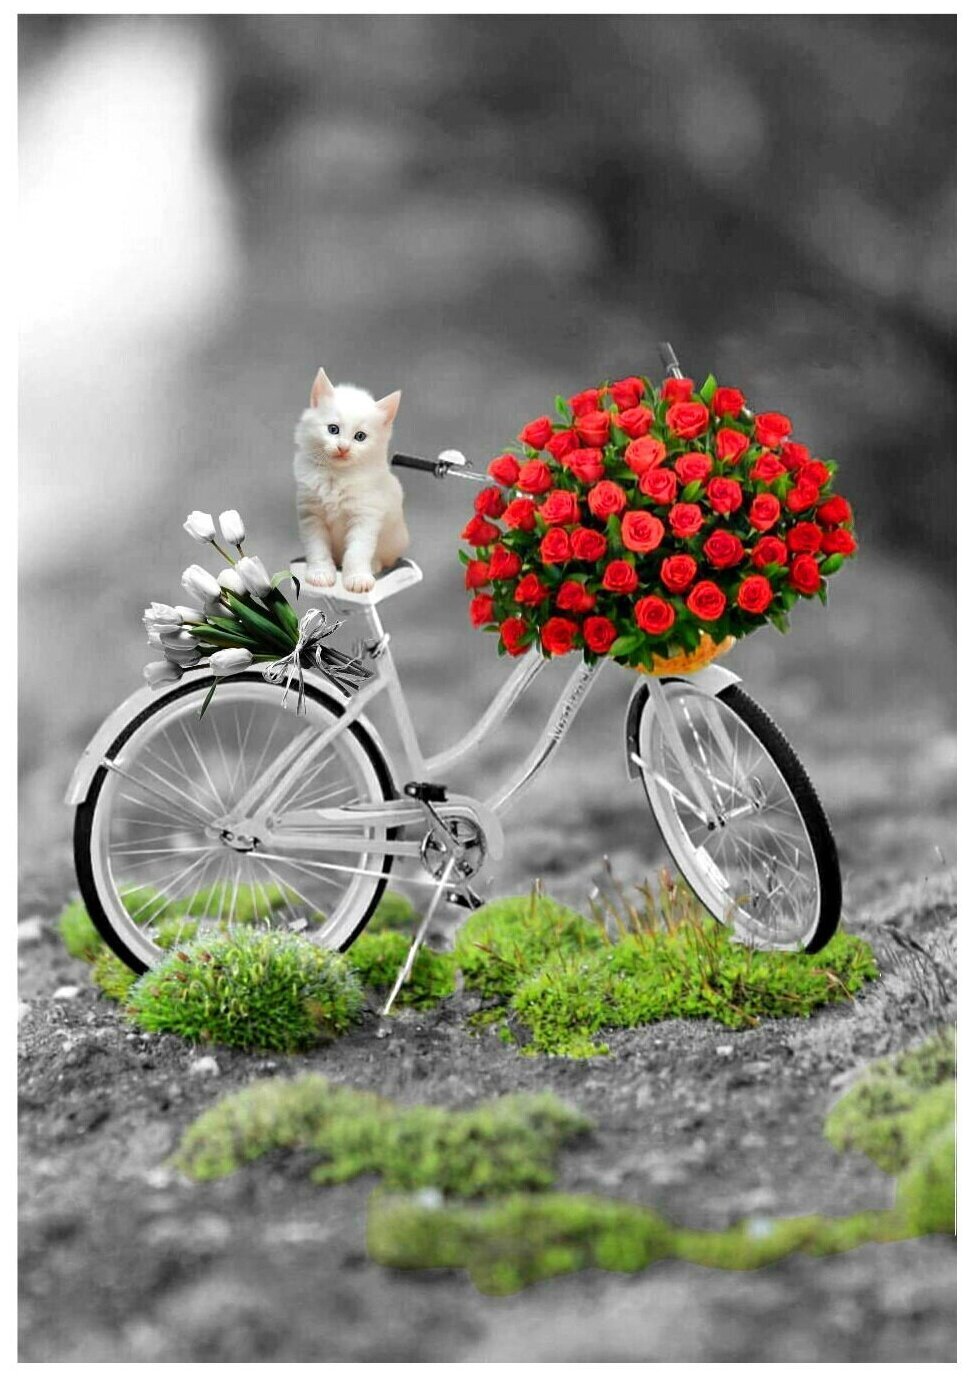 Я желаю тебе быть счастливым веселым. Яркого дня и хорошего настроения. Велосипед с цветами. Хорошего дня и настроения. Открытки с позитивом хорошего настроения.